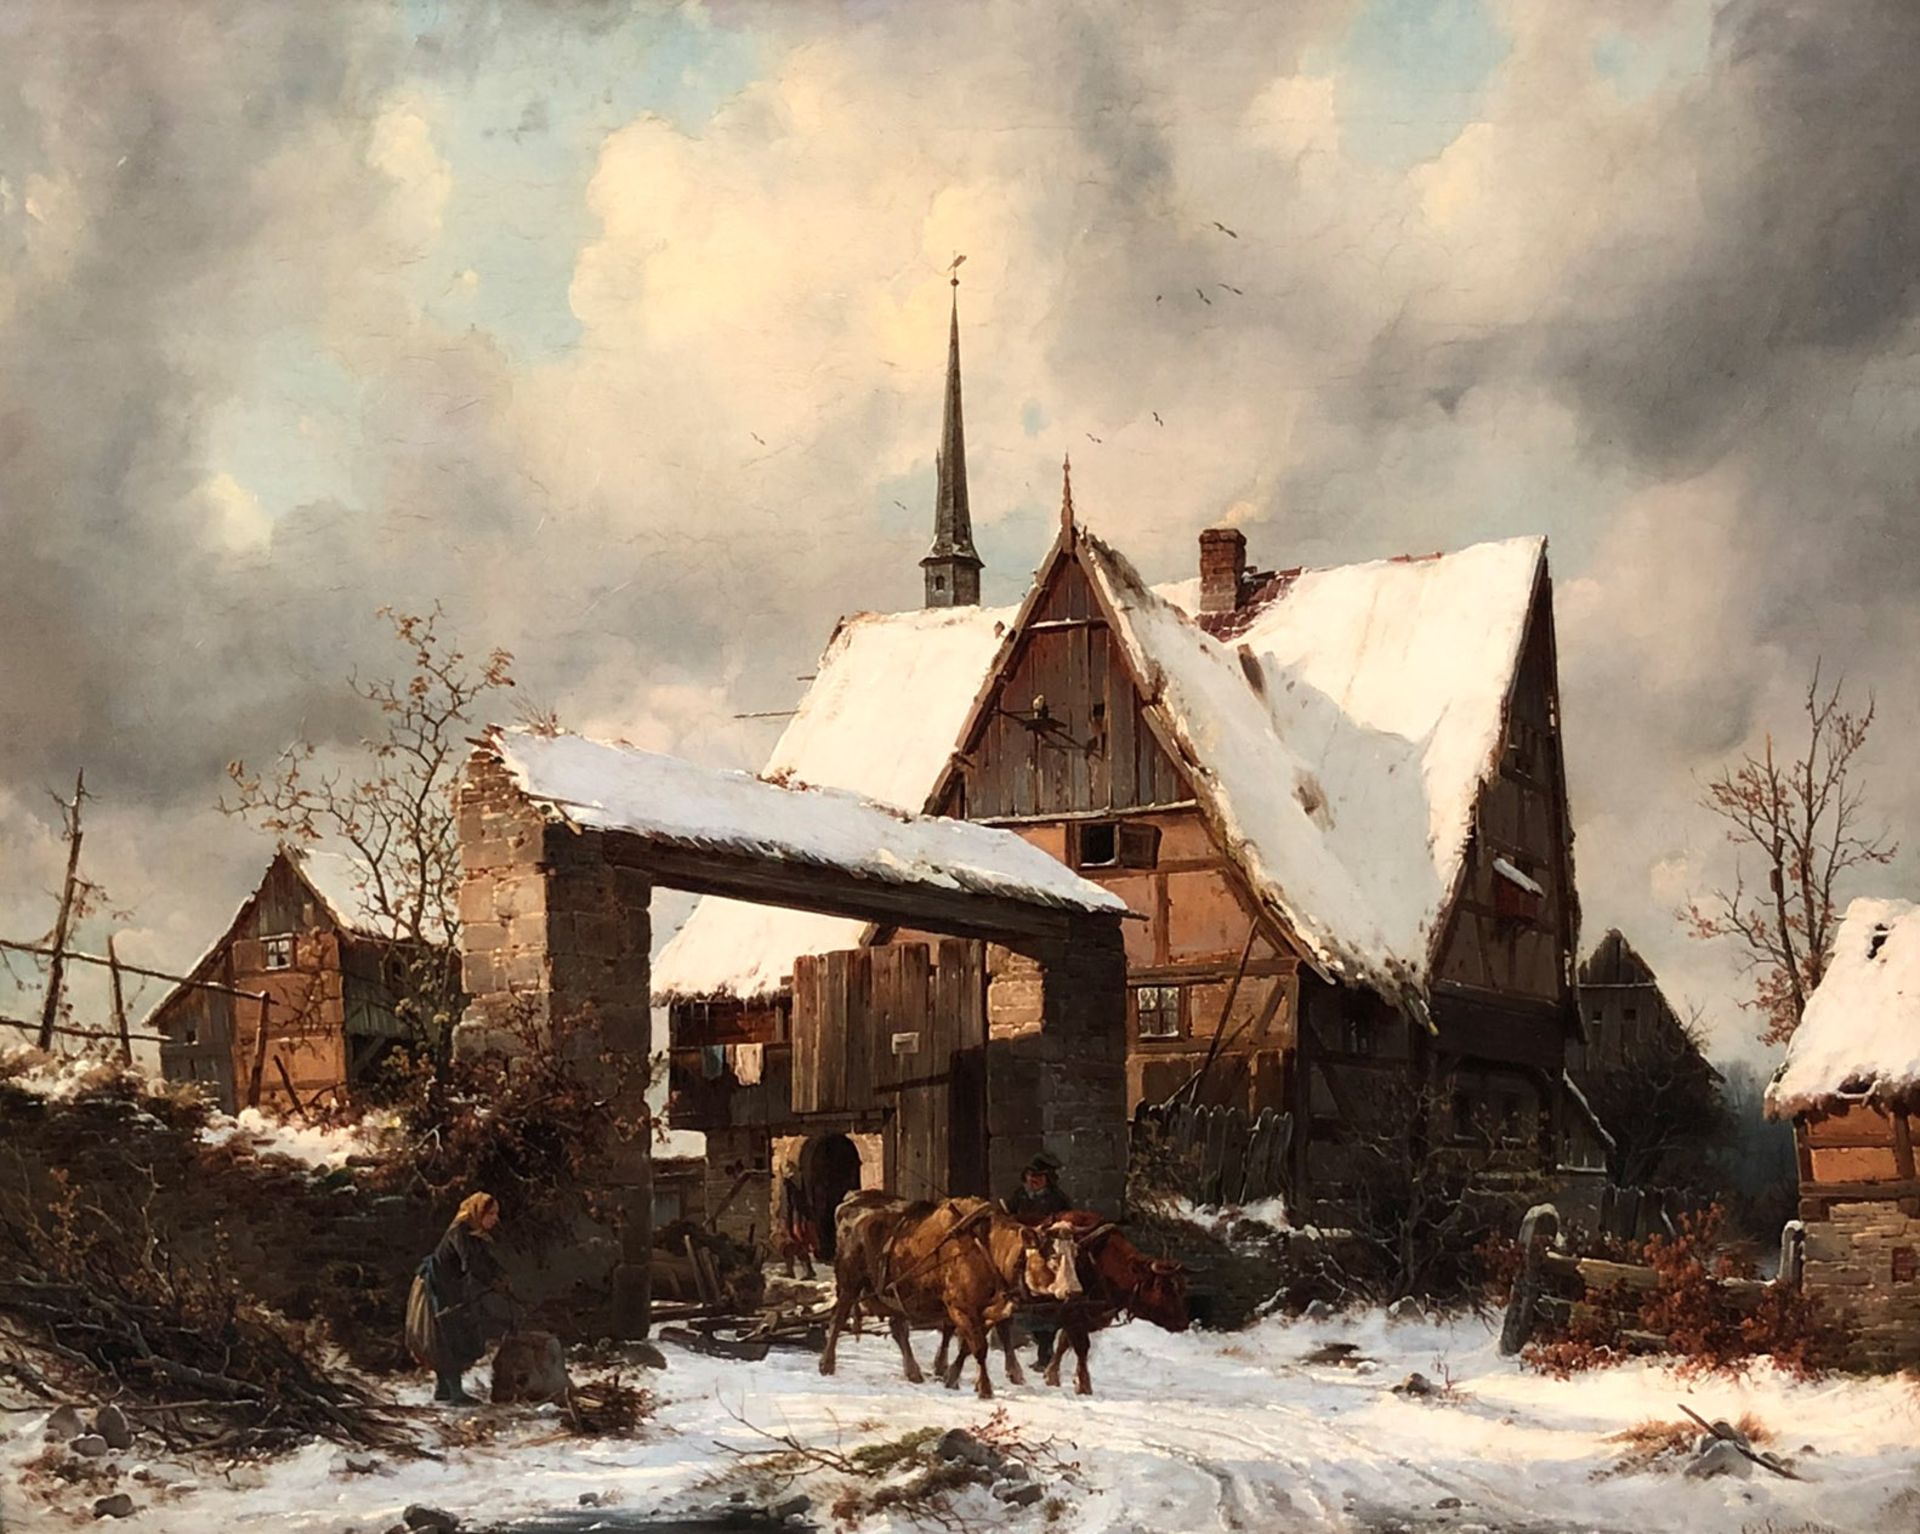 Carl Julius LEYPOLD (1806 - 1874). Bauerngehöft im Winter.44 cm x 55 cm. Gemälde. Öl auf Leinwand.